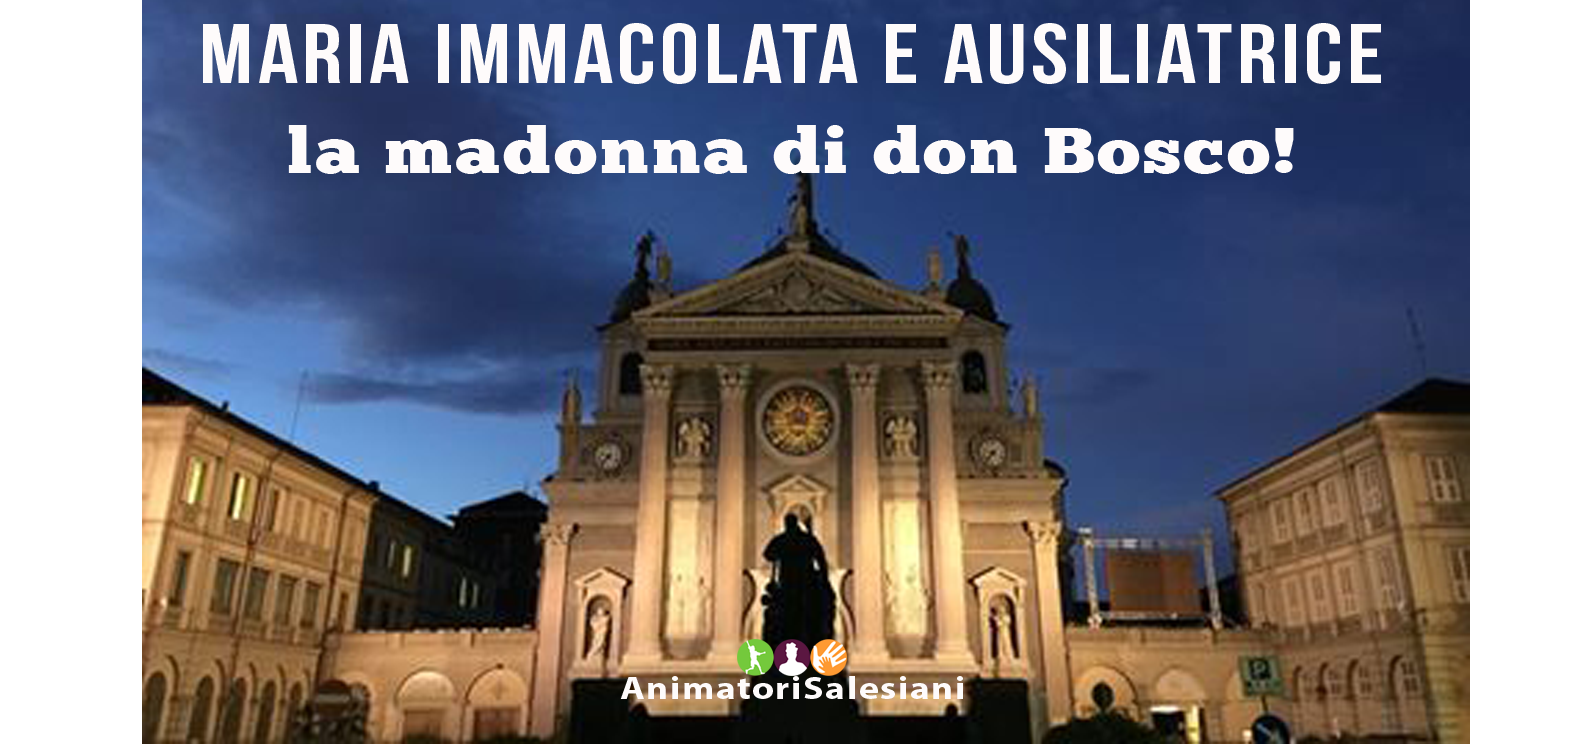 Maria Immacolata e Ausiliatrice, la madonna di don Bosco!